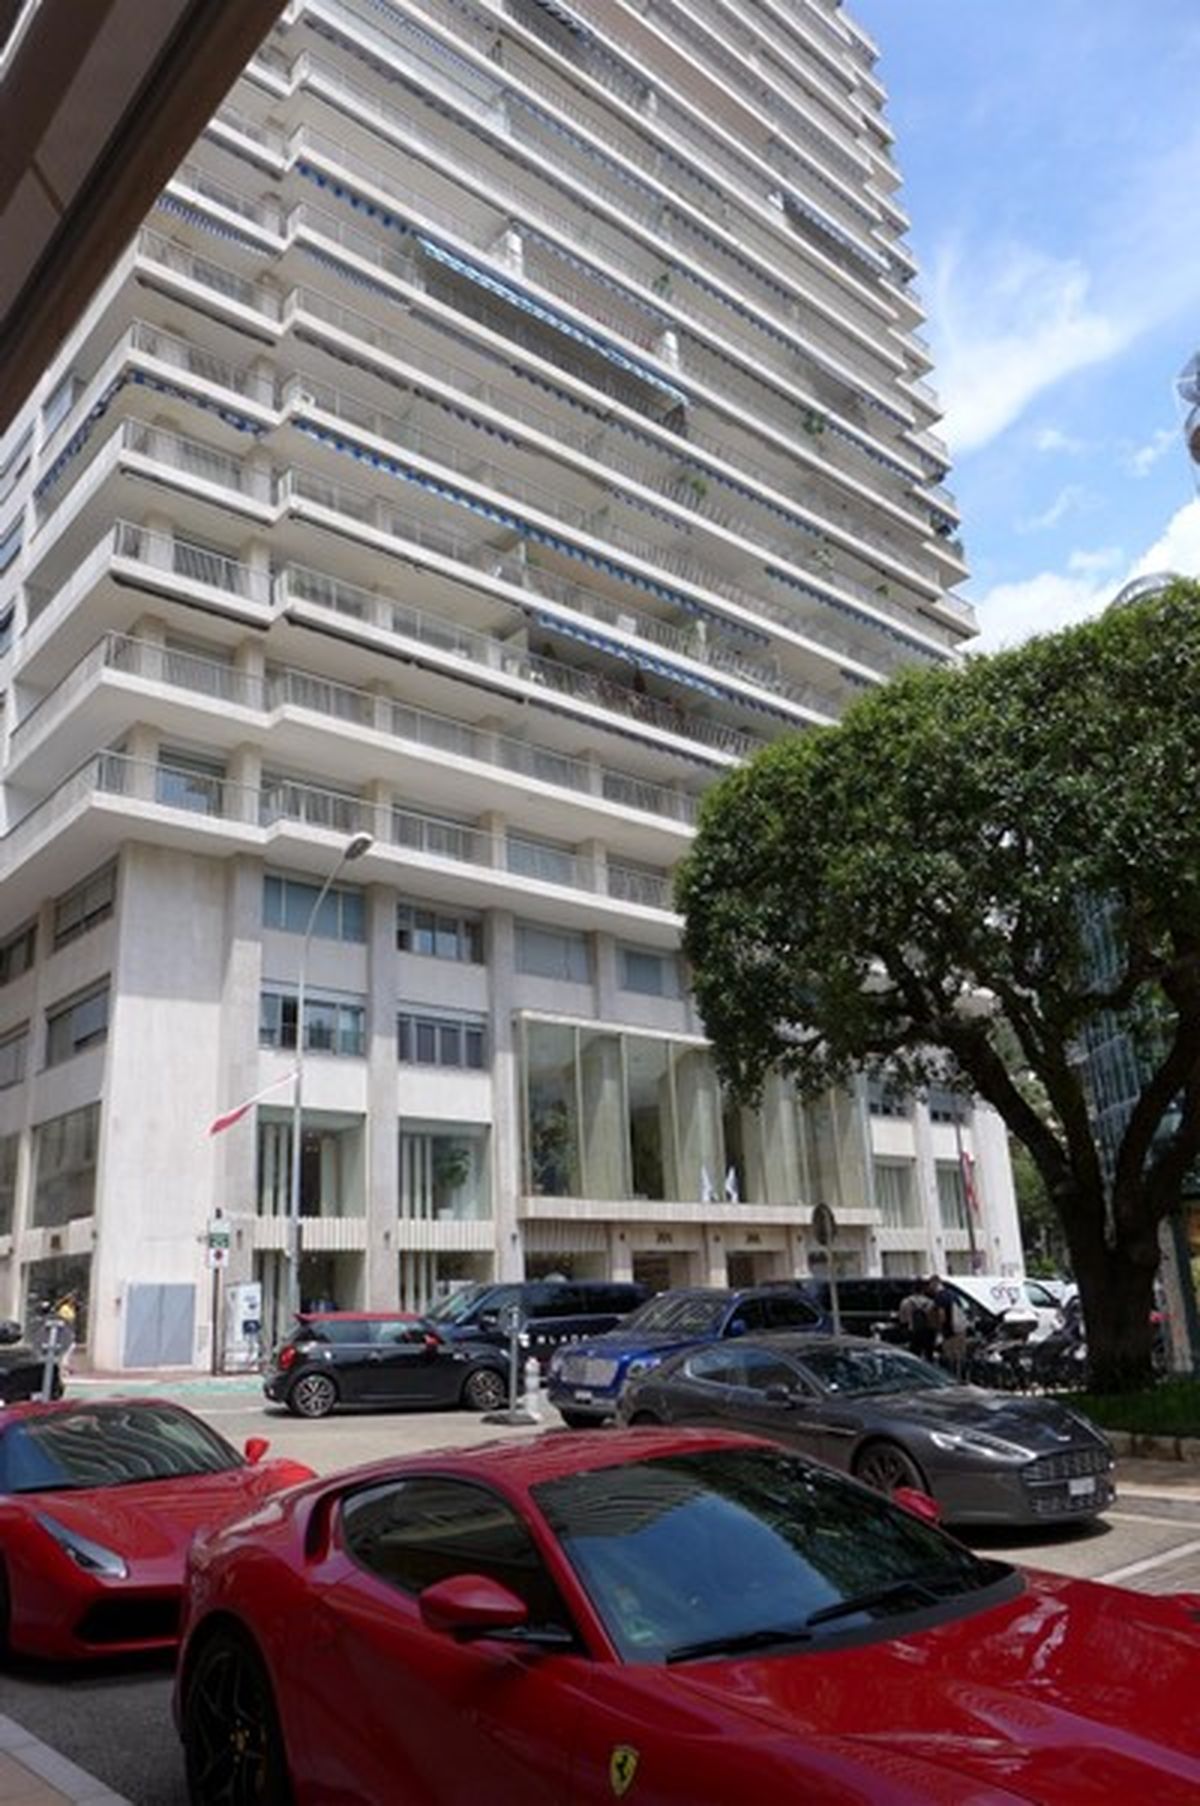 "Феррари" - естественный атрибут людей, которые могут позволить себе купить квартиру в Sun Towers в Монако. Когда они выходят из дома, их встречает бар шампанского Veuve Clicquot. Фото: OCCRP